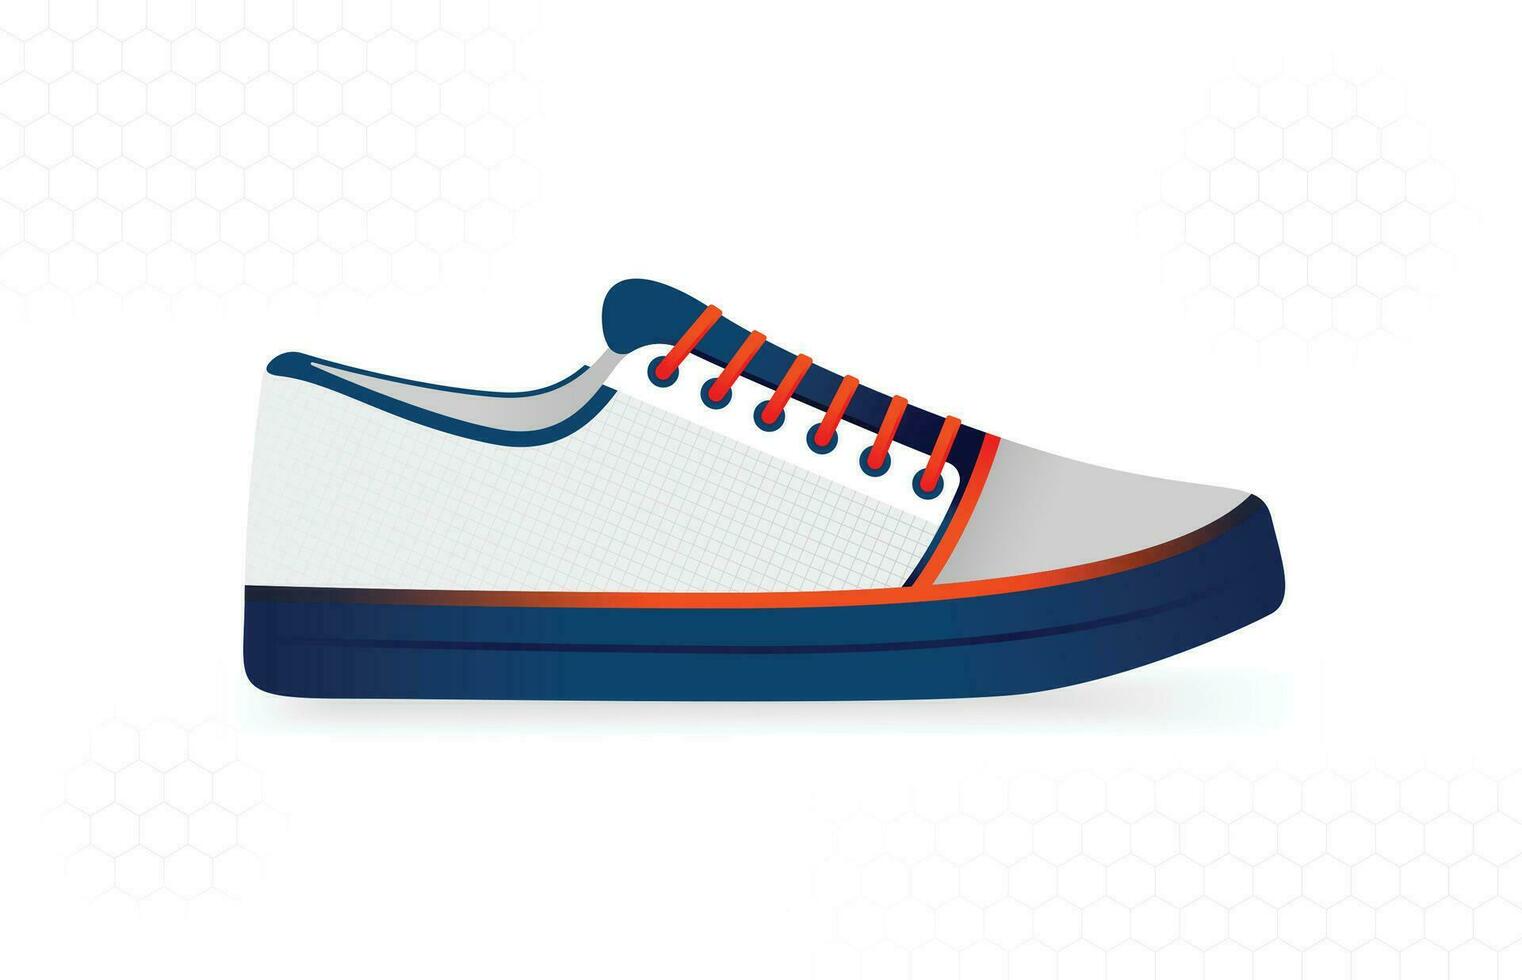 Weiß Sneaker Design mit dick Sohlen und Orange Schnürsenkel zum beiläufig verwenden, arbeiten, Sport, Schule, Betrieb. vektor